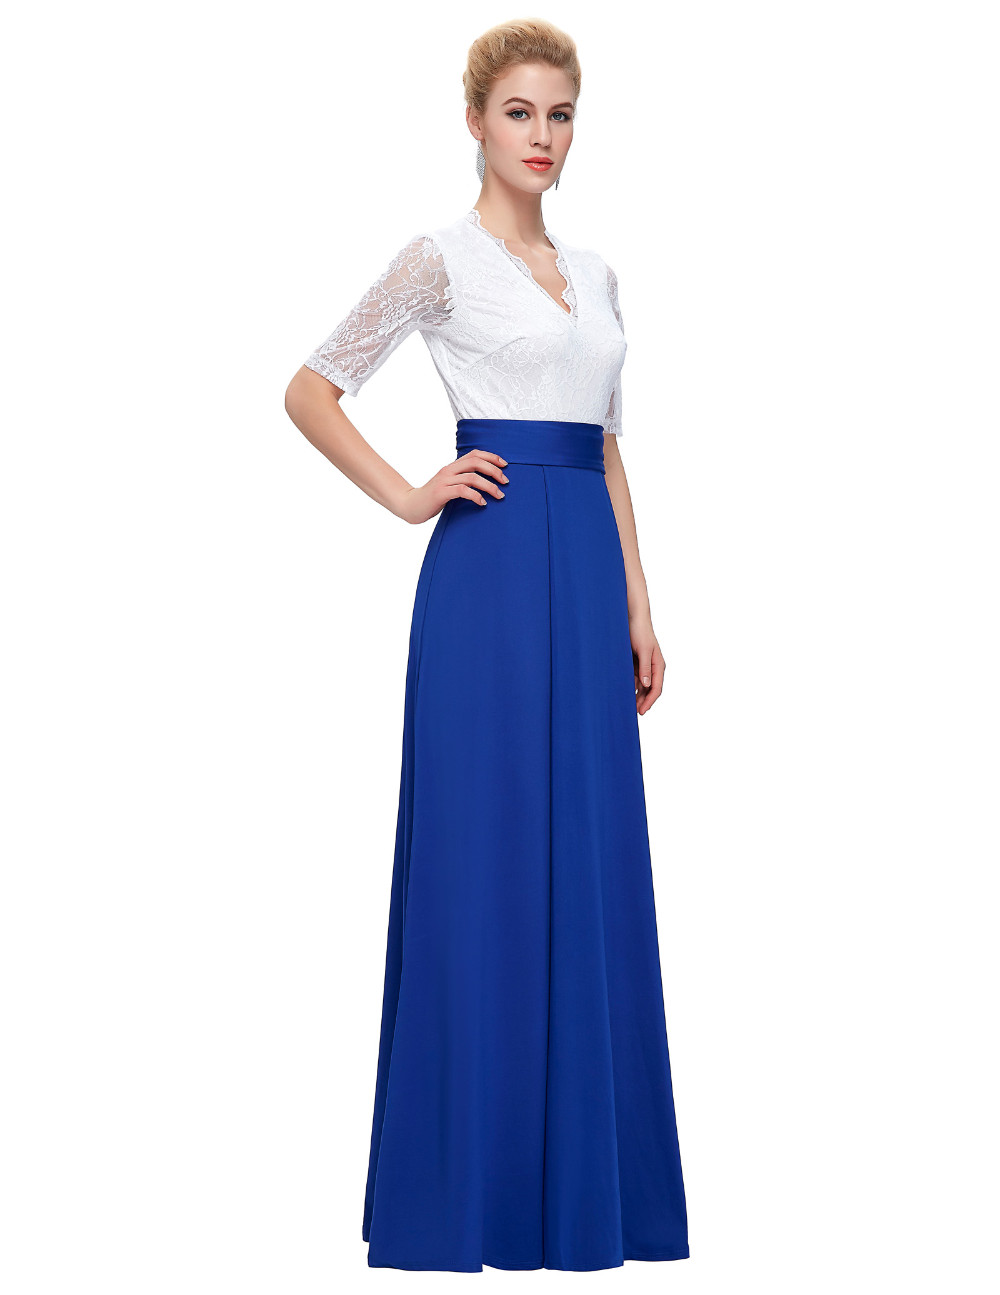 Half-Sleeve-Lace-party-dress-women-summer-style-robe-de-soiree-split-Floor-Length-Formal-Navy-Blue-s-32646277022